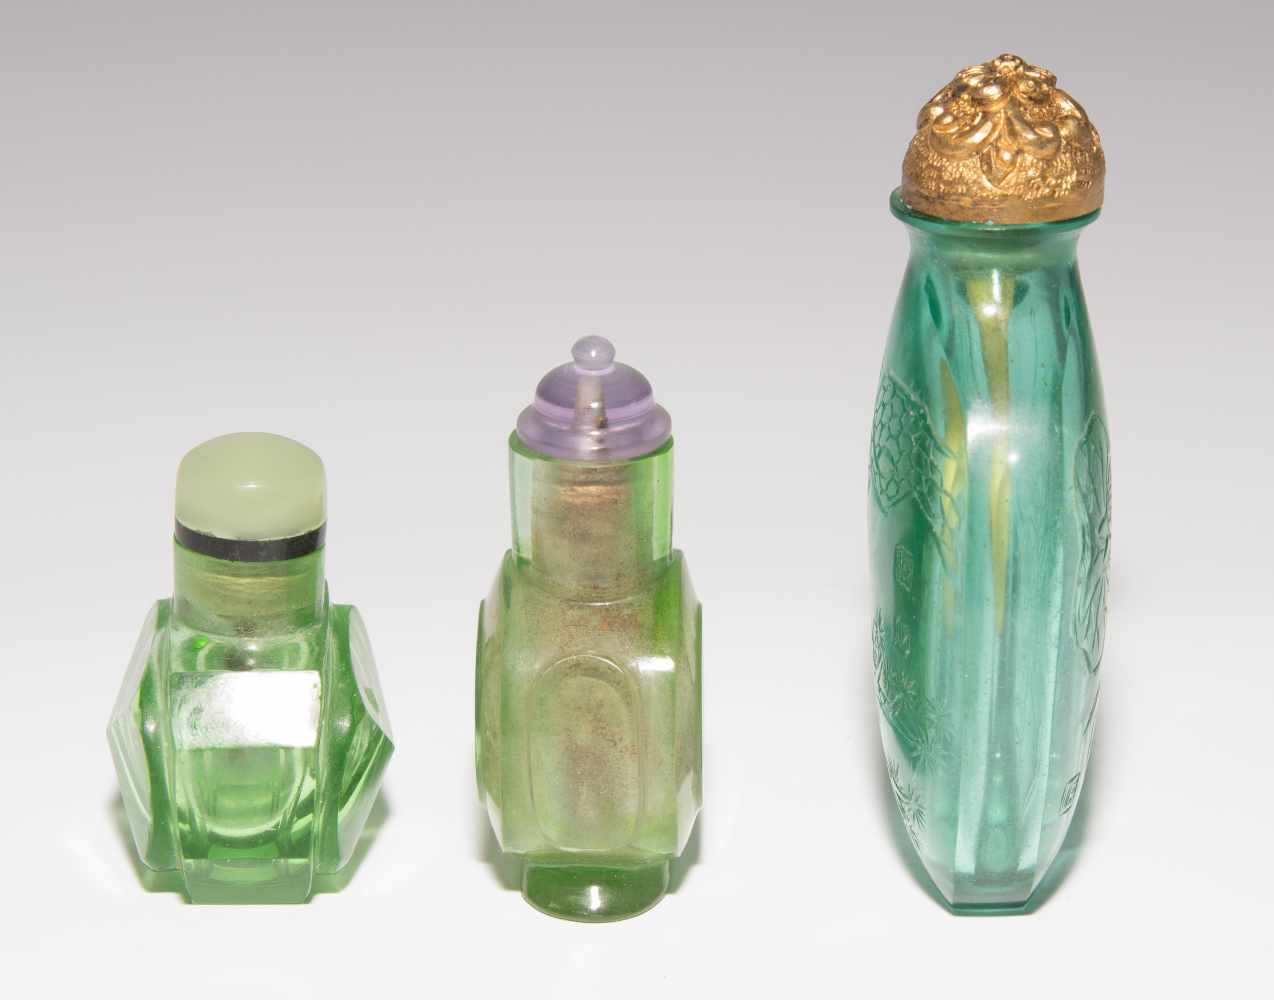 9 Glas Snuff BottlesChina. Transparentes Glas in verschiedenen Grüntönen, ein Snuff Bottle aus - Image 11 of 22